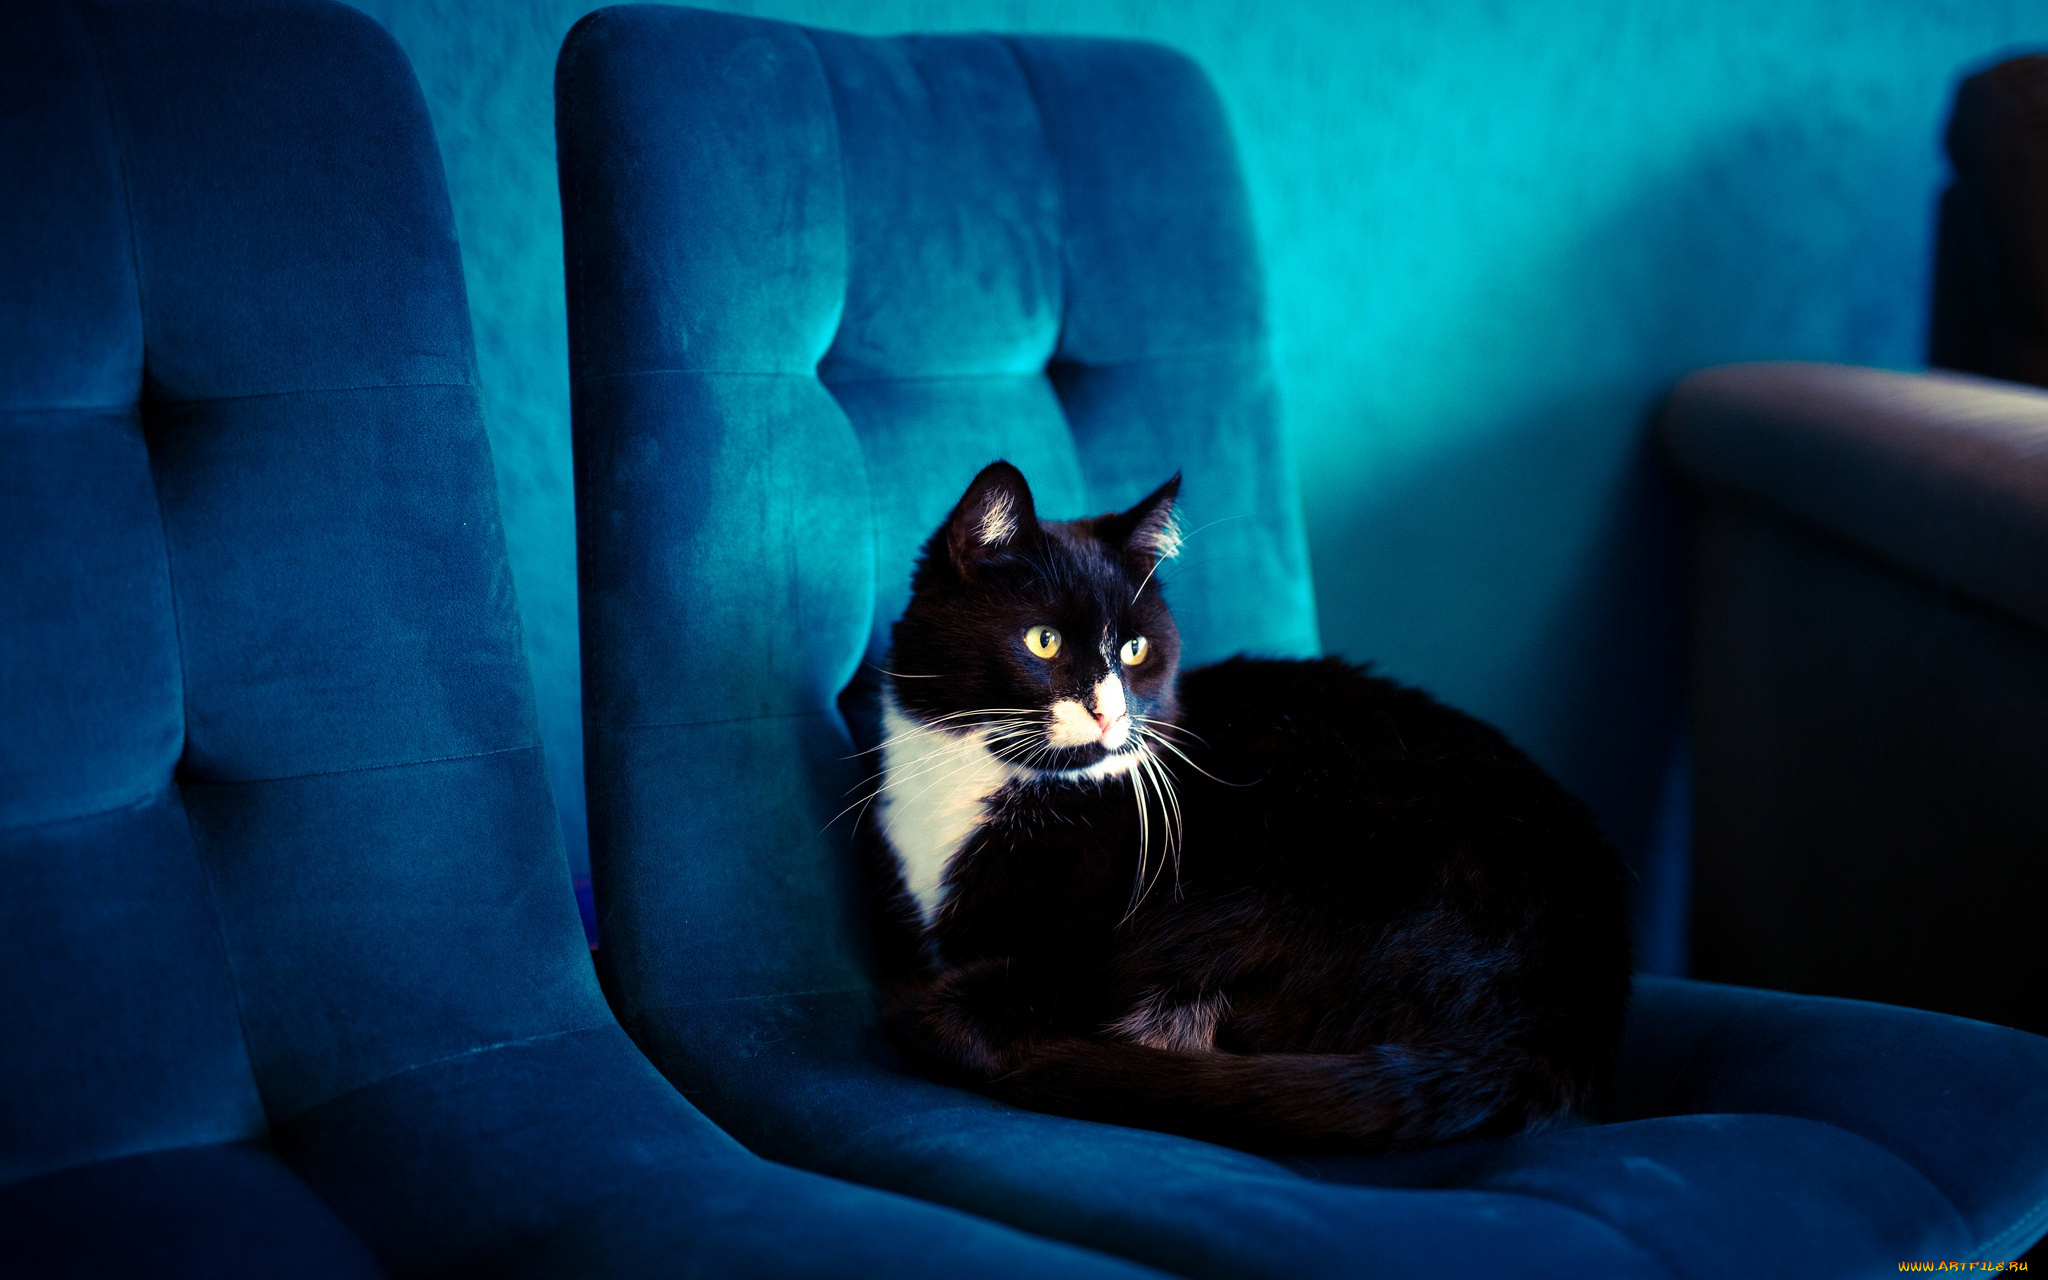 животные, коты, кот, синий, кресло, помещение, черный, голубой, обивка, фон, лежит, кошка, взгляд, комната